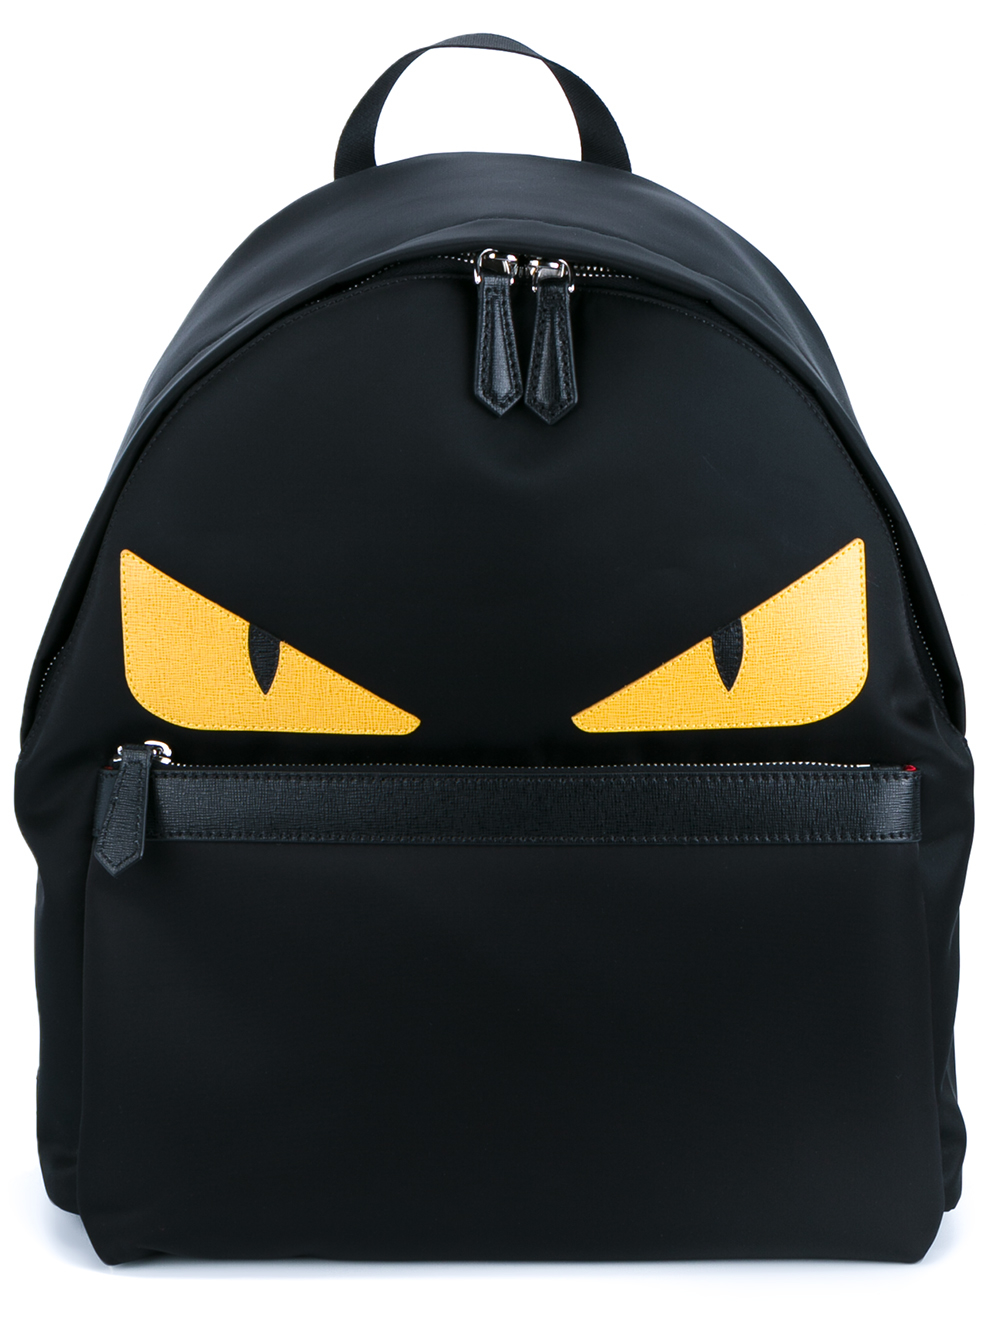 Fendi Monster Backpack in Black Yellow (Black) for Men - Lyst